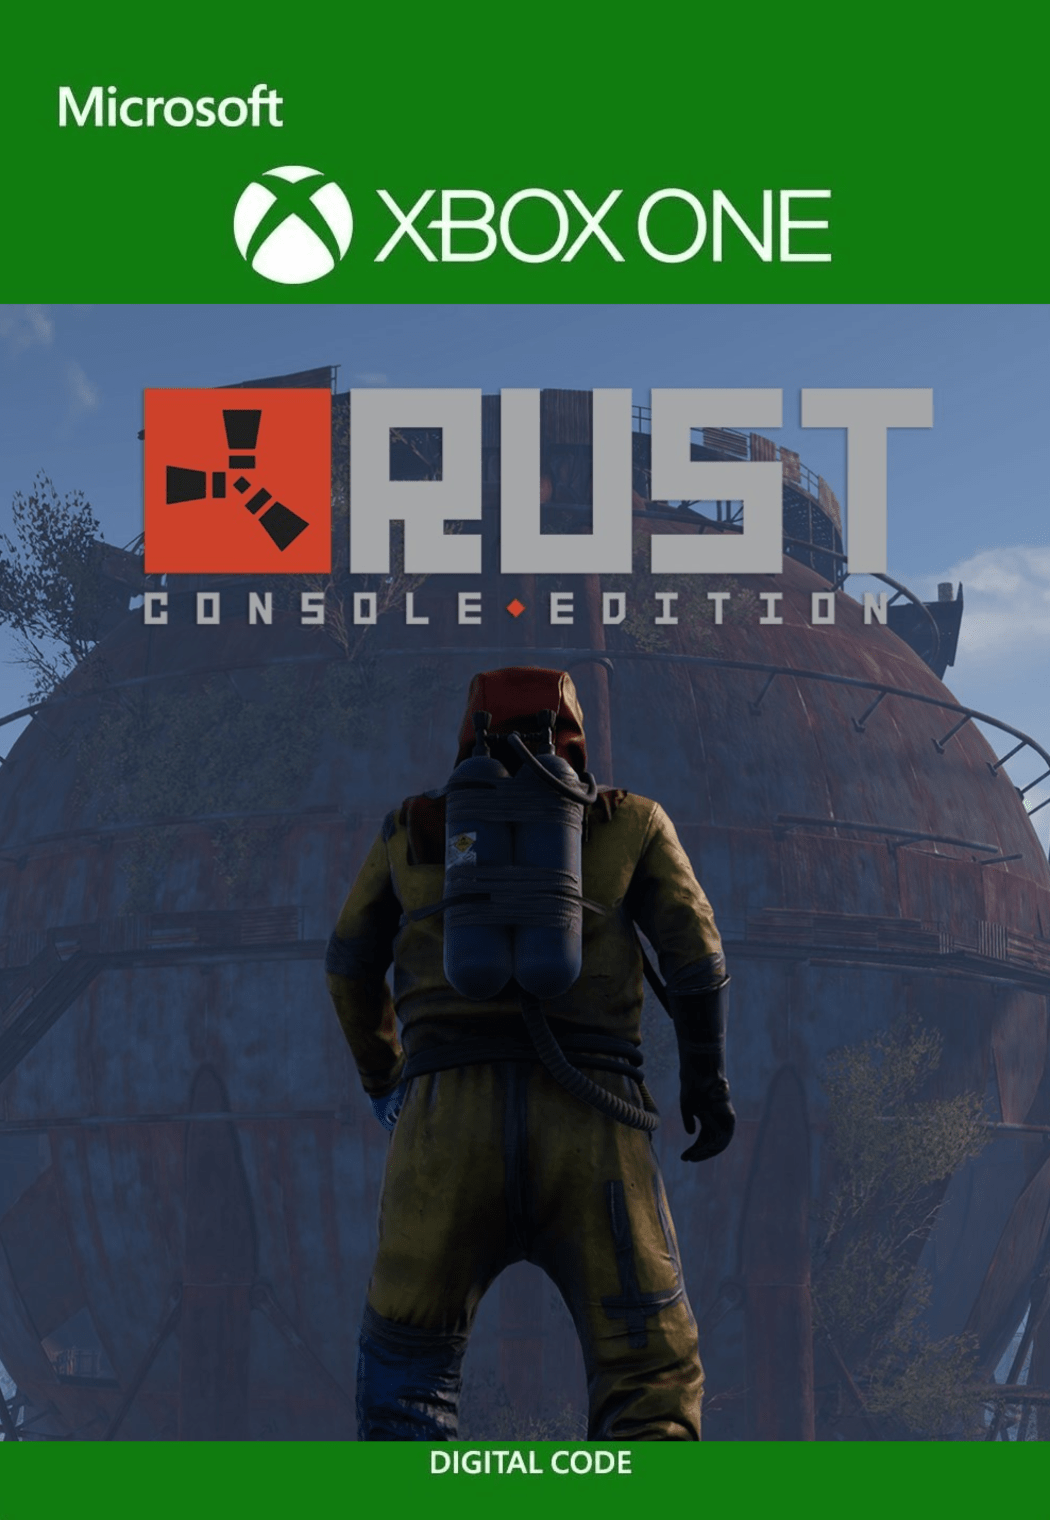 Rust est disponible sur Xbox : quelques astuces pour bien